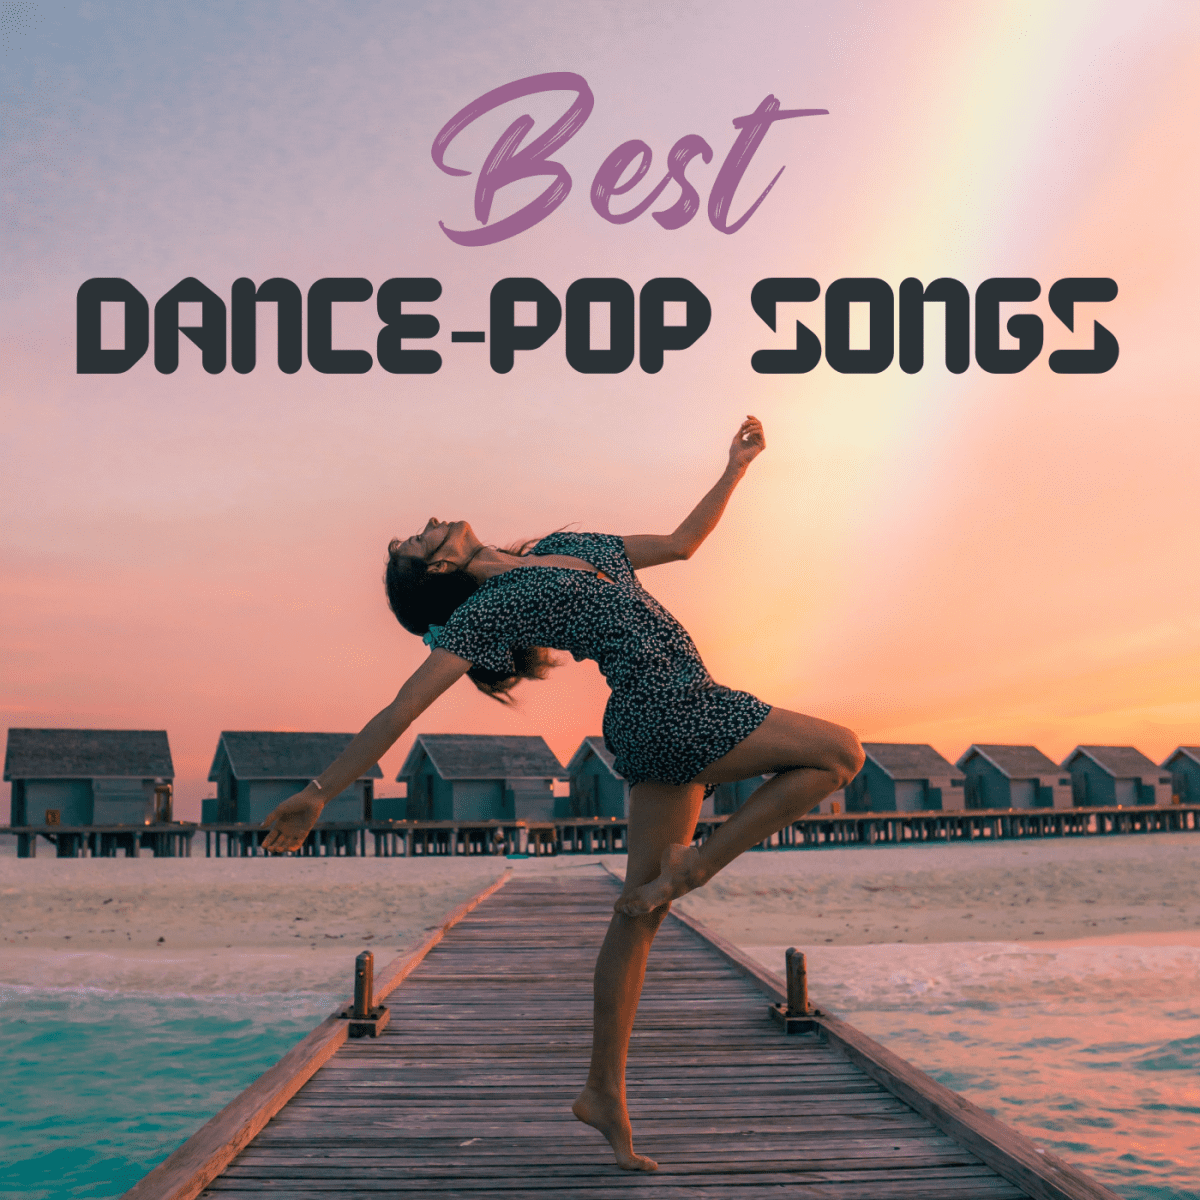 helling Besmettelijk Perforatie 100 Best Dance-Pop Songs - Spinditty